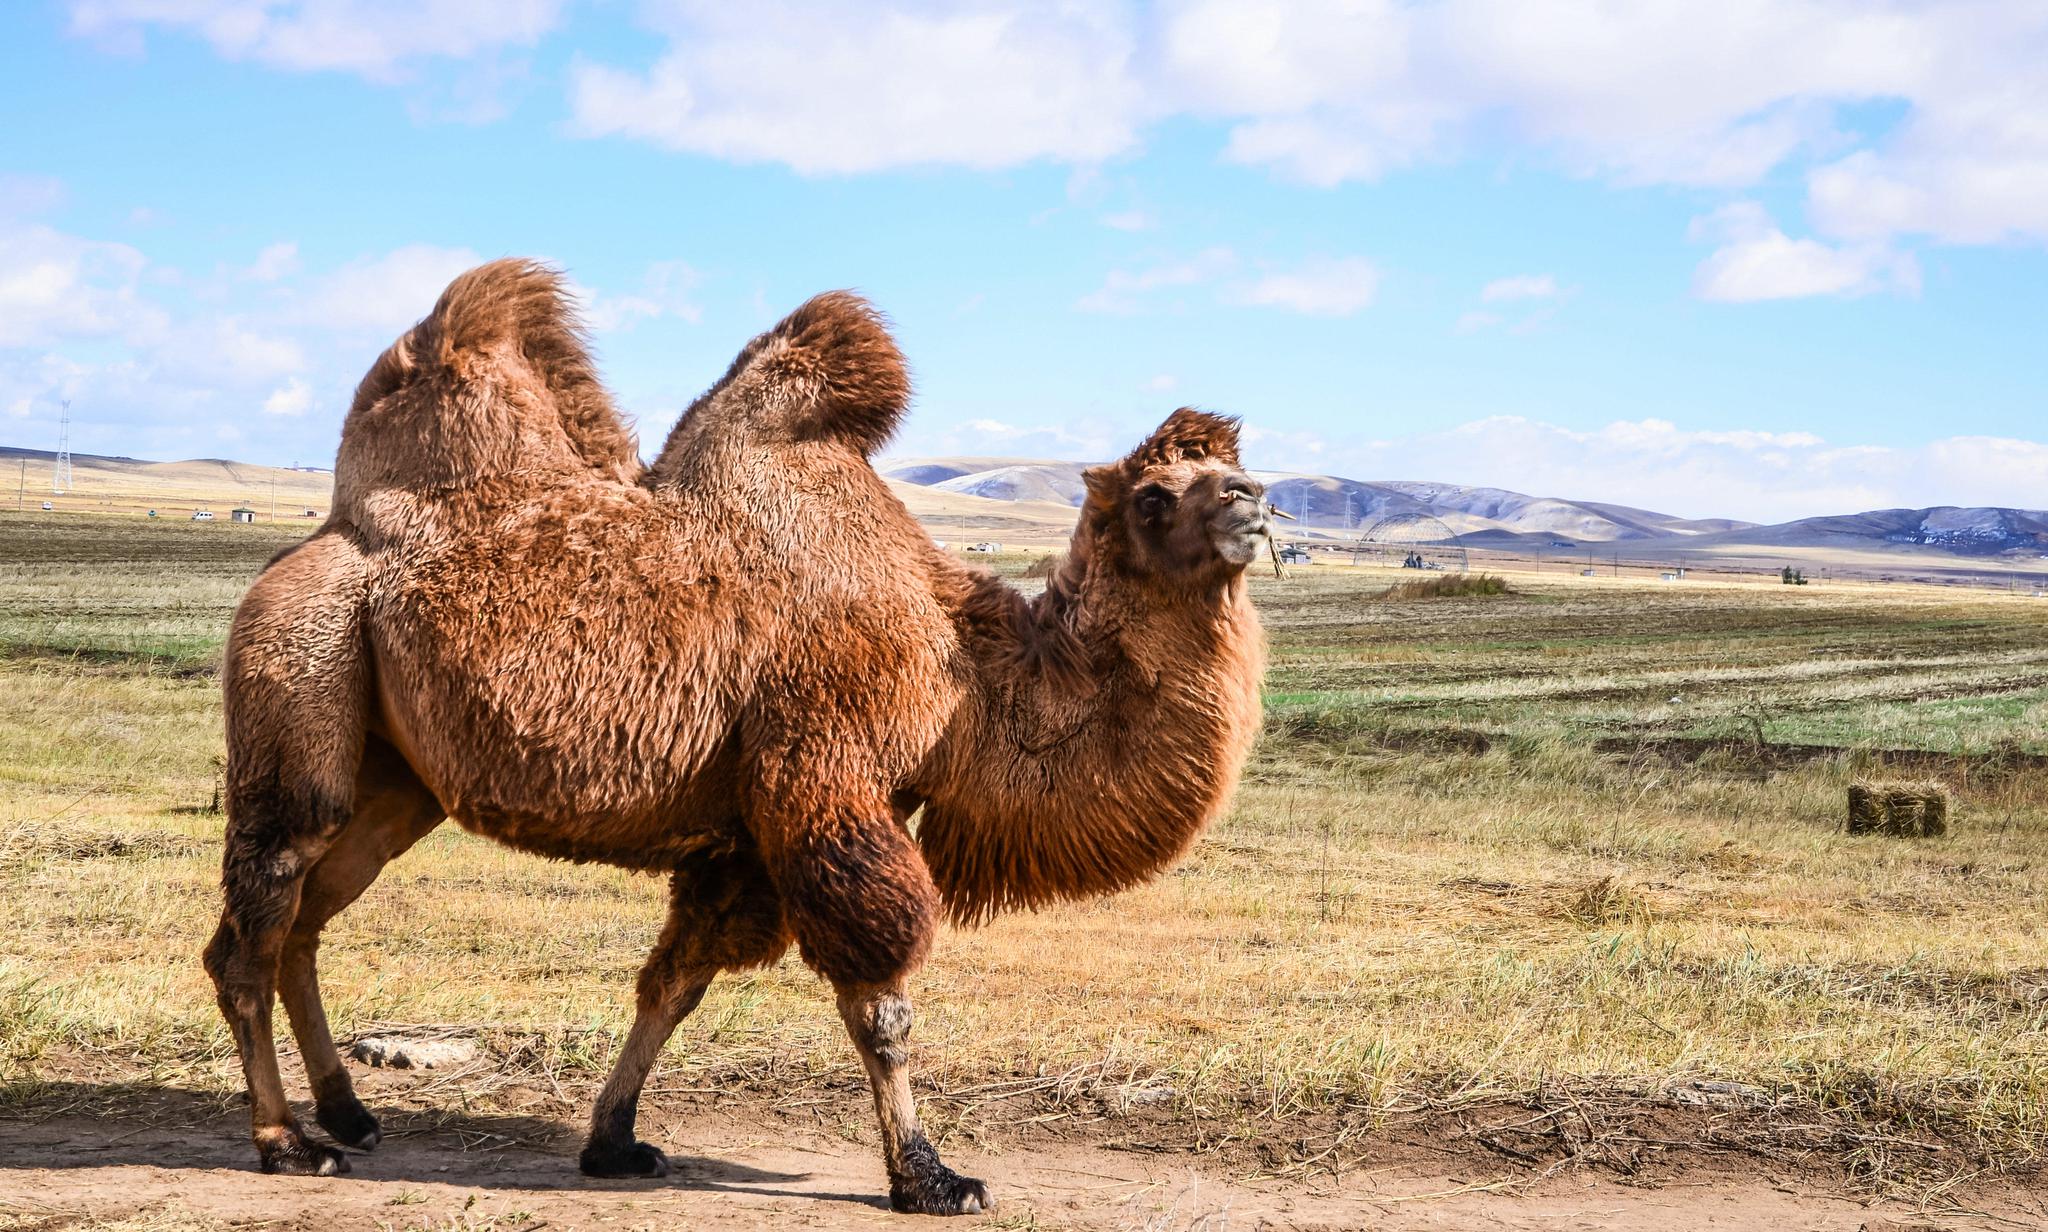 图片素材 : 野生动物, 动物群, 骆驼喜欢哺乳动物, 野马马, 阿拉伯骆驼 2304x1536 - - 74550 - 素材中国, 高清壁纸 - PxHere摄影图库